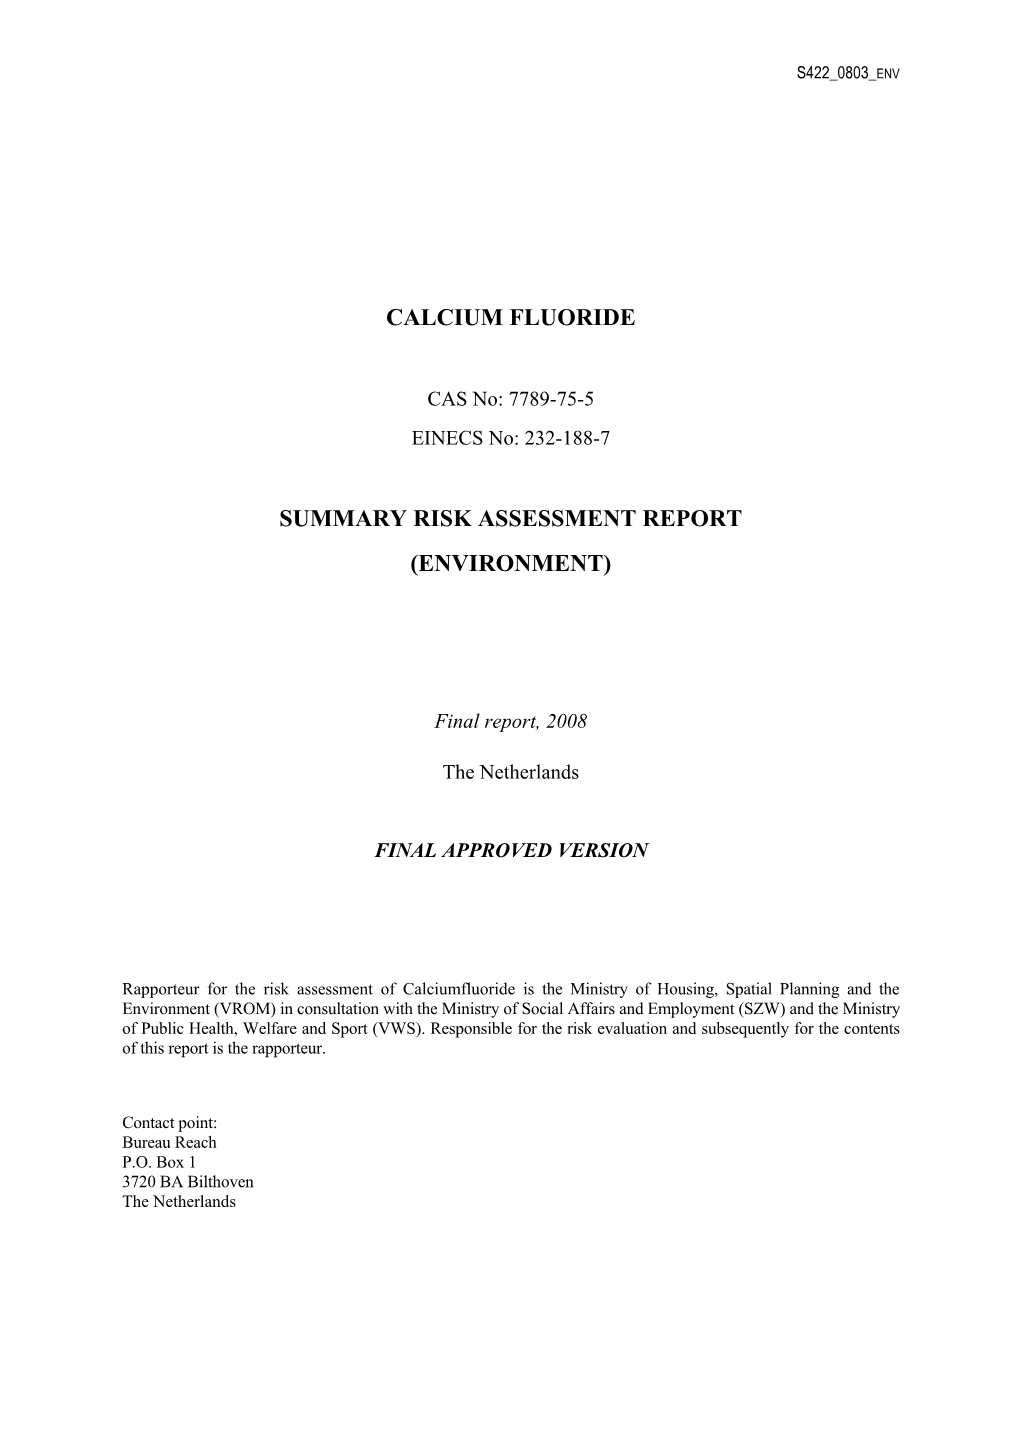 Calcium Fluoride Summary Risk Assessment Report